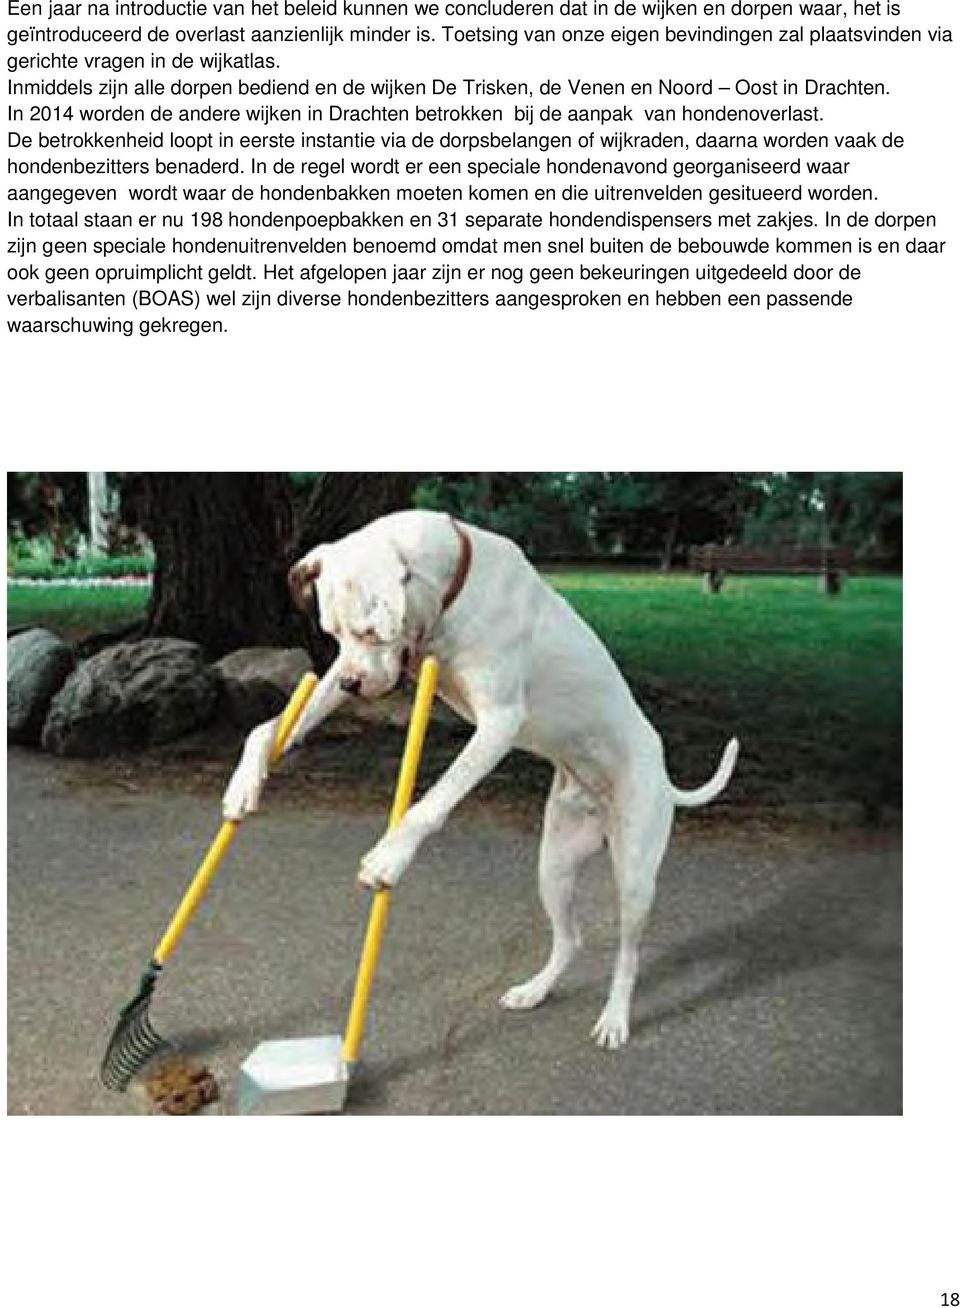 In 2014 worden de andere wijken in Drachten betrokken bij de aanpak van hondenoverlast.